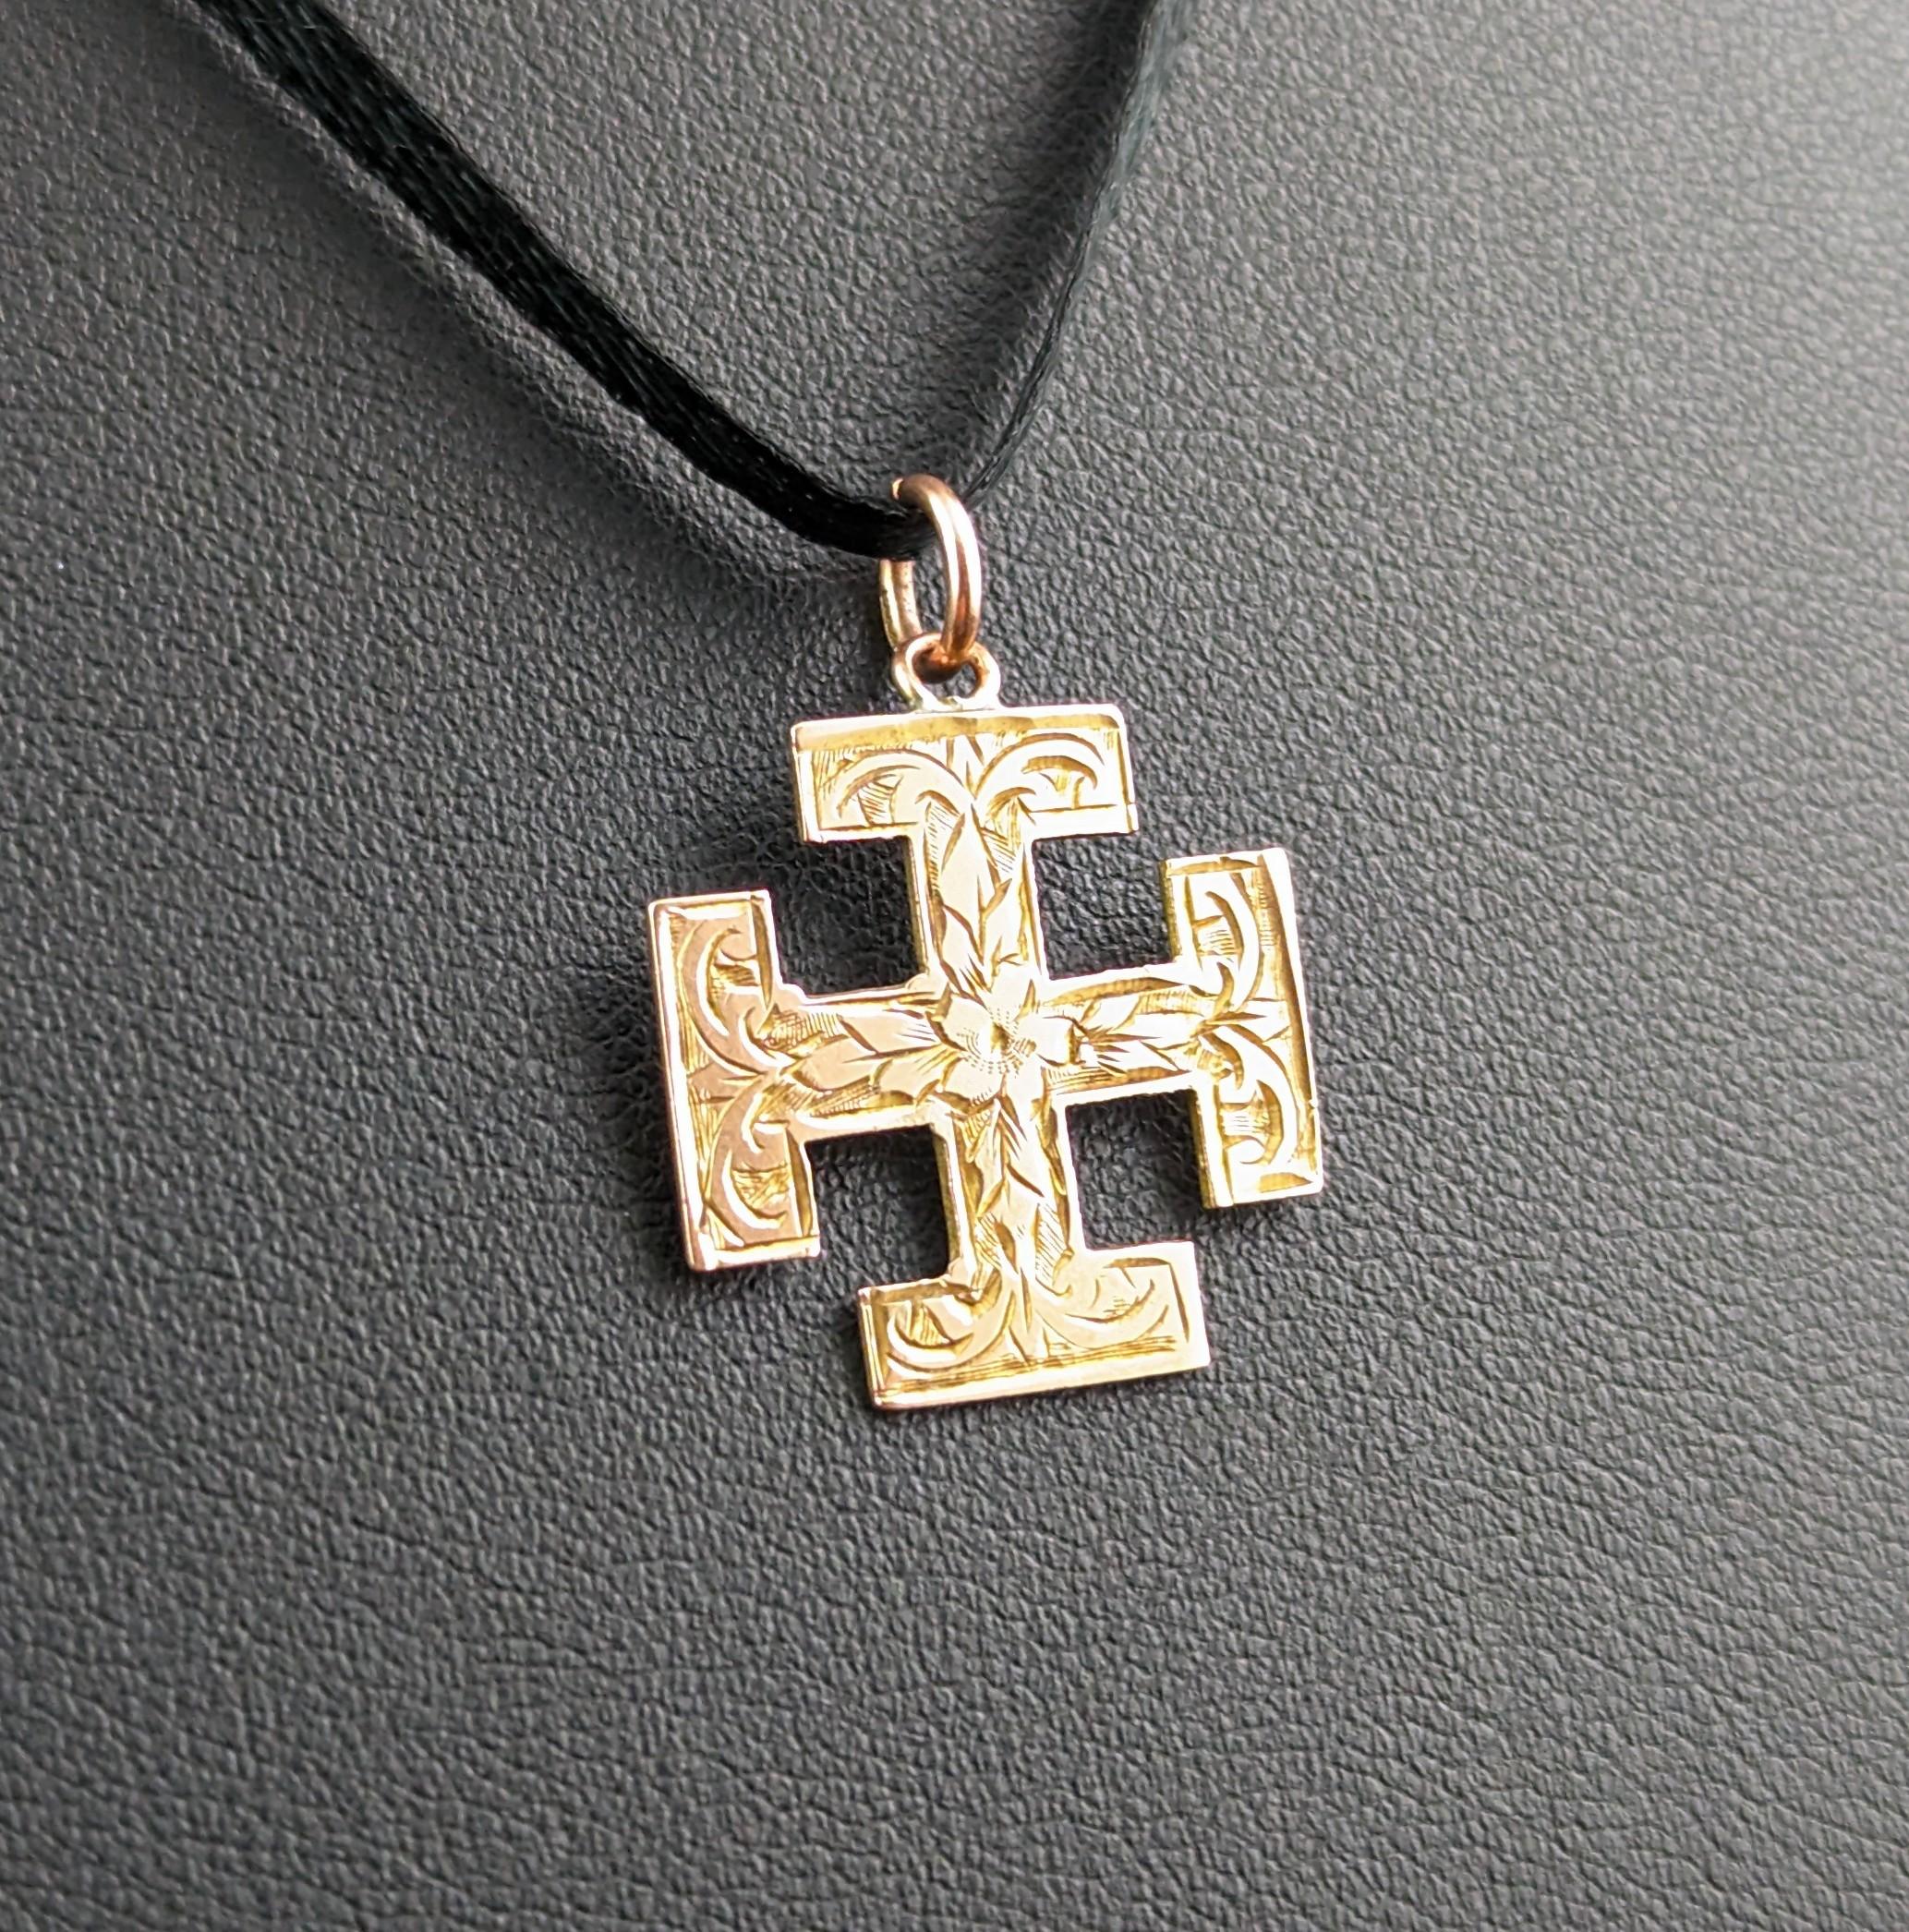 Antique 9k Gold Jerusalem Cross Pendant, Engraved 2